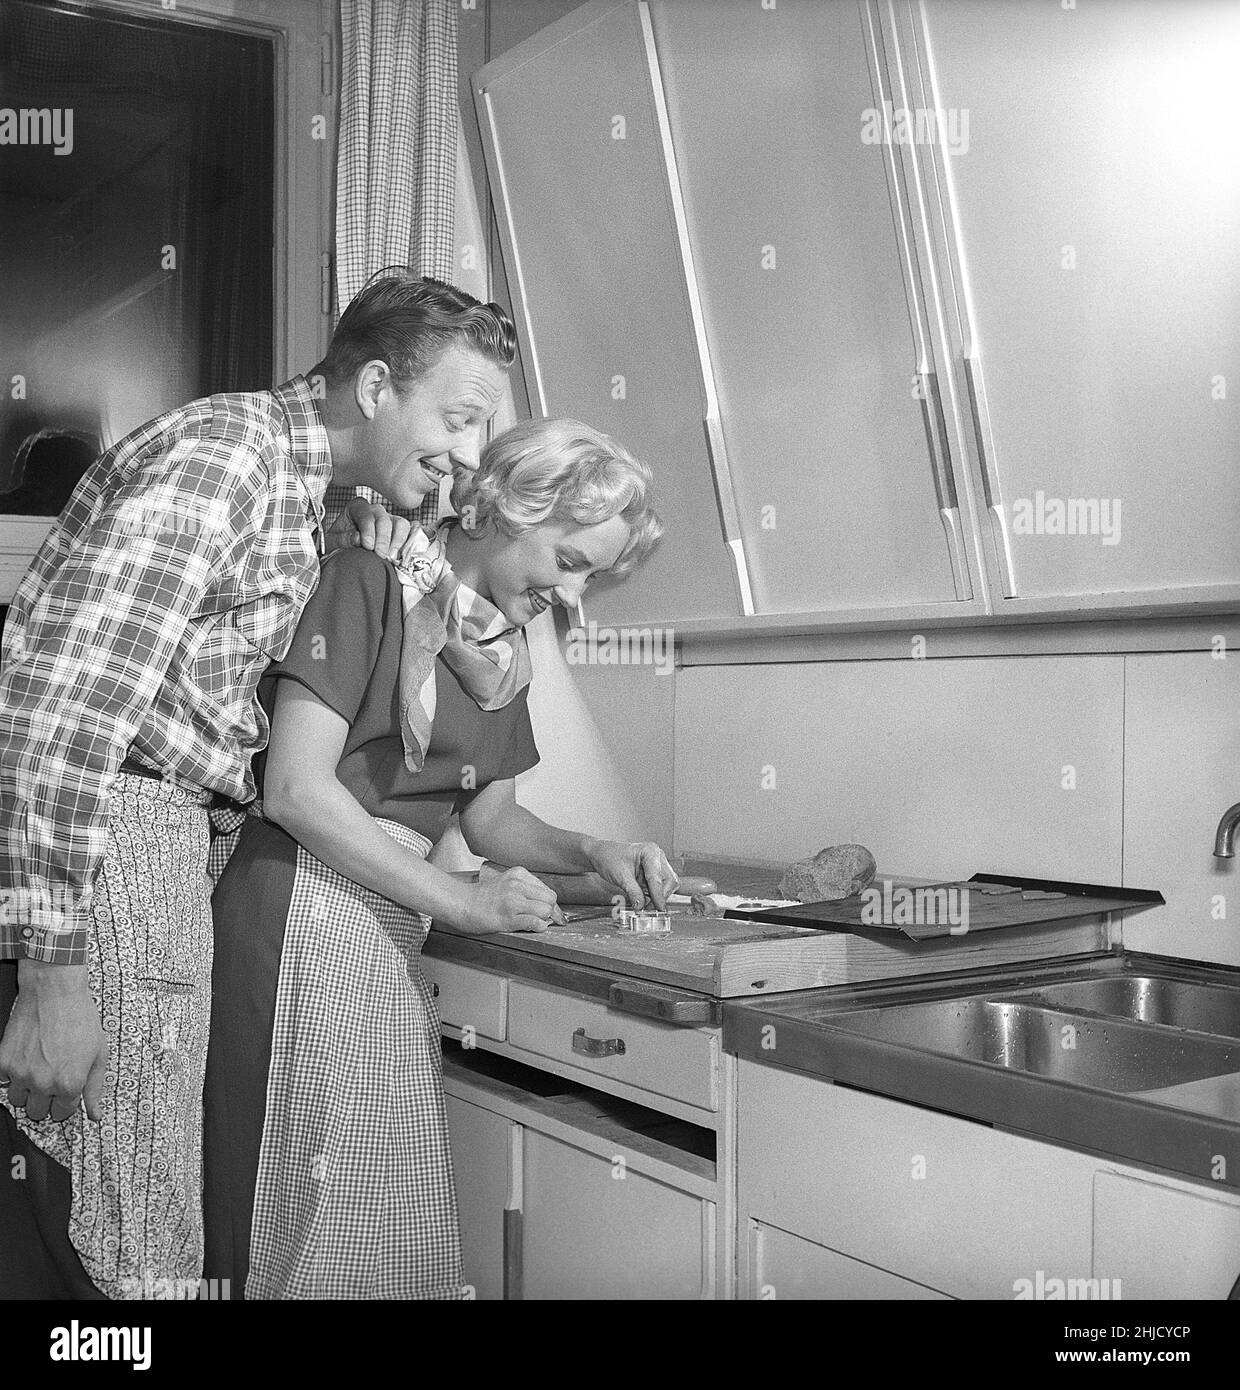 Dans la cuisine dans le 1950s.Ajeune couple qui fait cuire des biscuits de pain d'épice en forme de coeur pour noël.Elle met la forme de métal en forme de cœur sur la pâte pour faire la forme.Elle est actrice UllaCarin Rydén.Suède 1951. Réf. Kristoffersson BE65-9 Banque D'Images